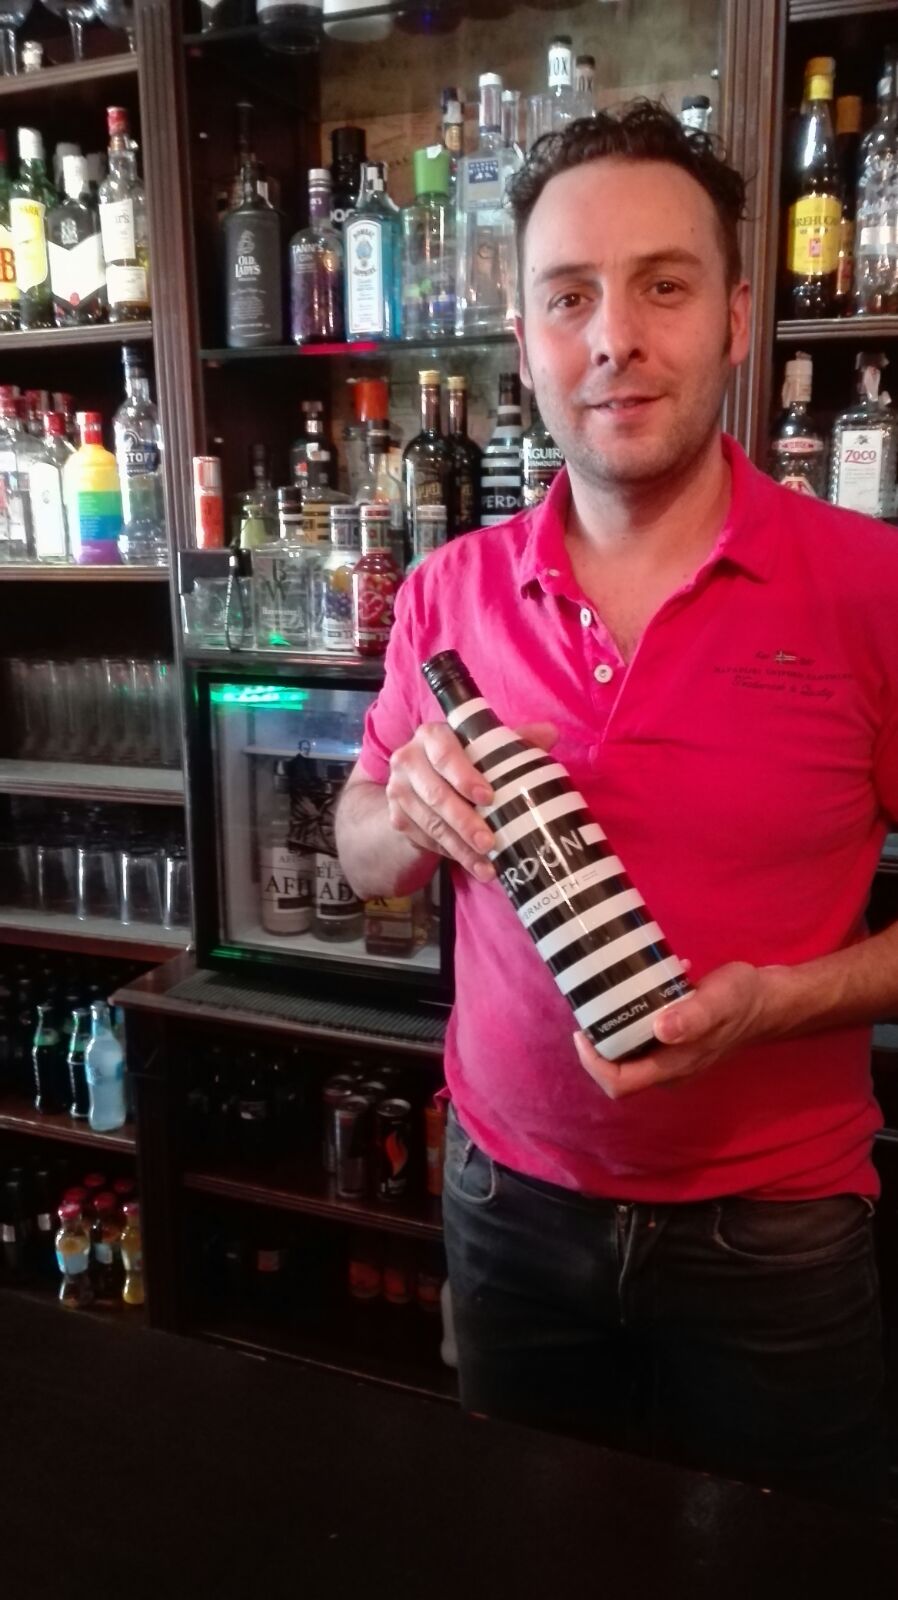 Concurso Vermouth Perdon - José Luis desde el Bar el Jarana de La Bañeza